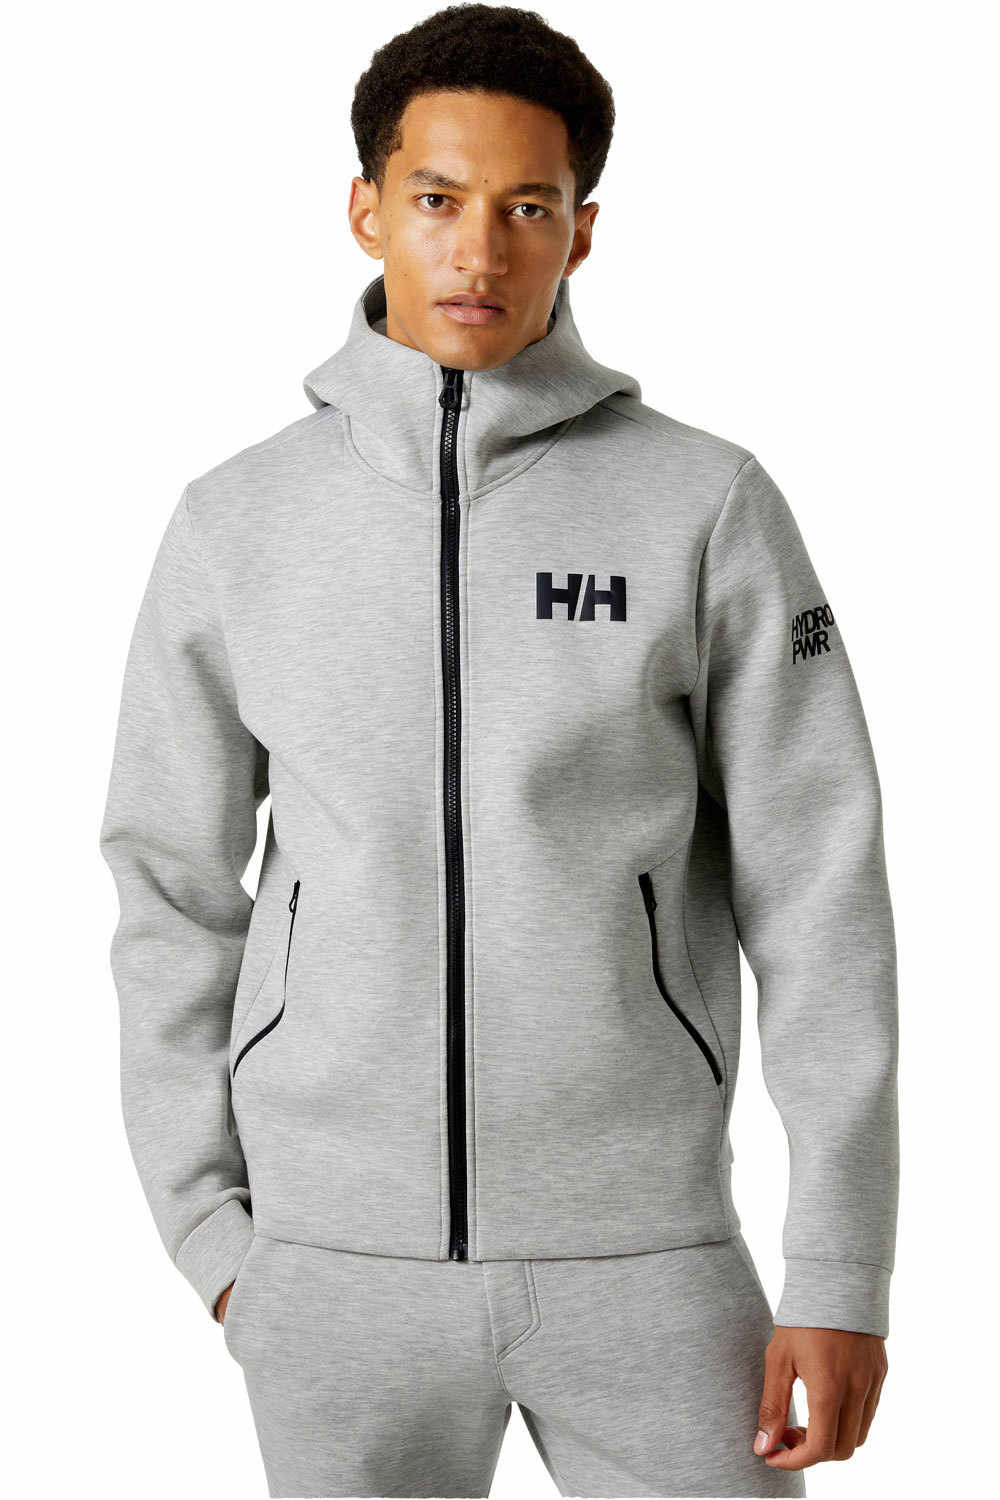 Helly Hansen chaquetas hombre HP OCEAN FZ JACKET 2.0 vista frontal